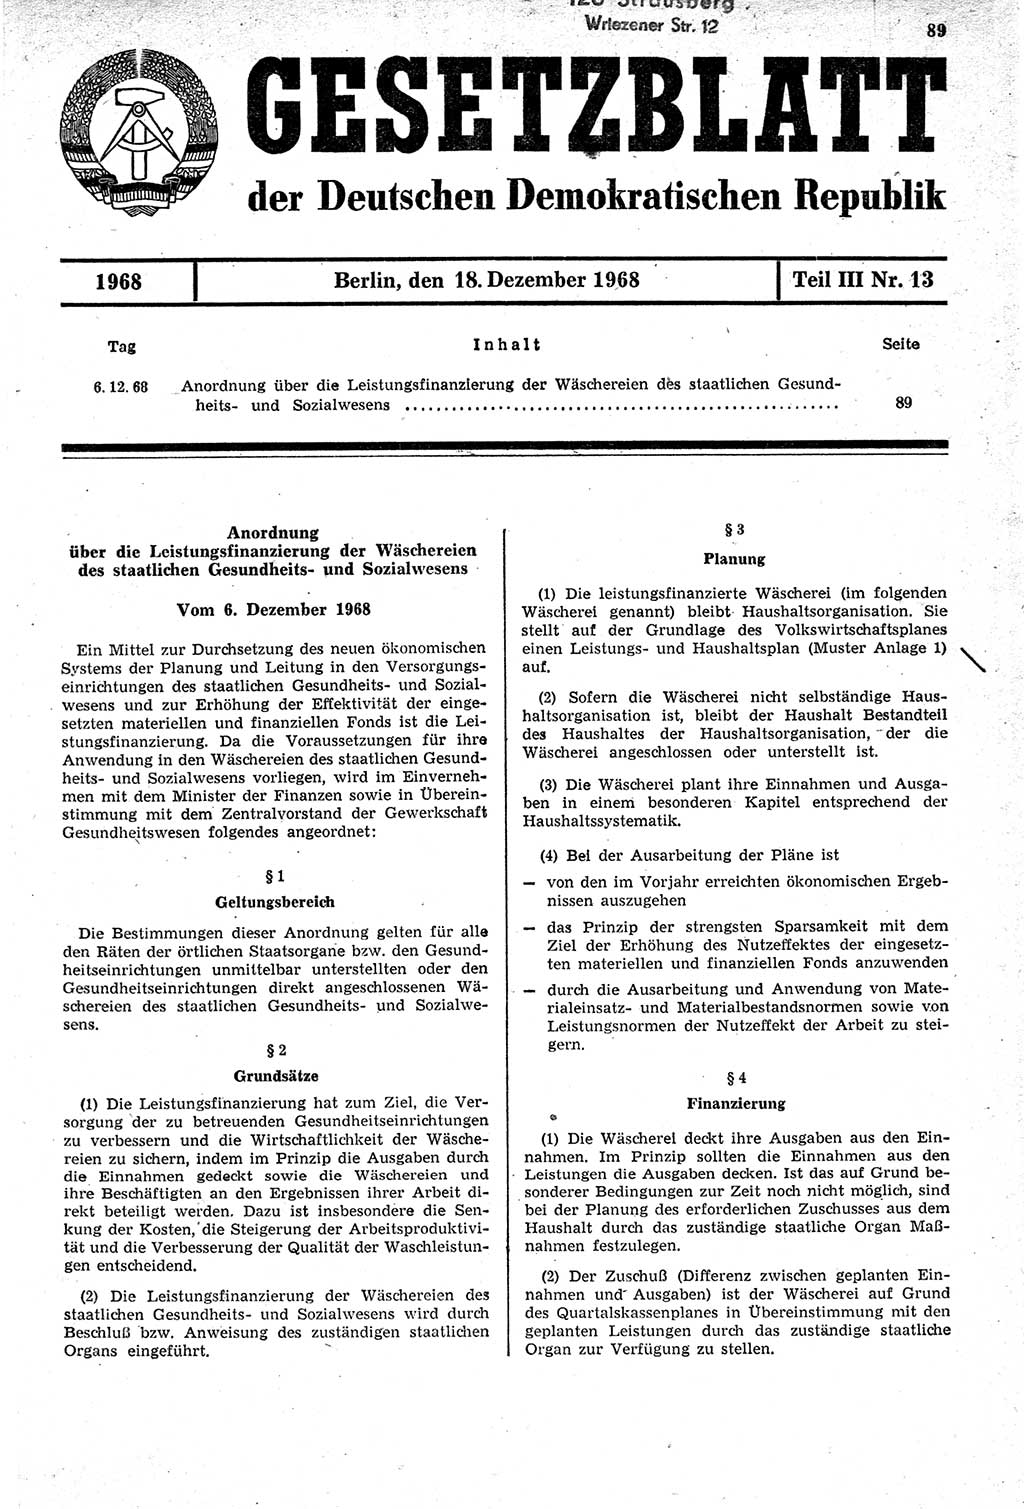 Gesetzblatt (GBl.) der Deutschen Demokratischen Republik (DDR) Teil ⅠⅠⅠ 1968, Seite 89 (GBl. DDR ⅠⅠⅠ 1968, S. 89)